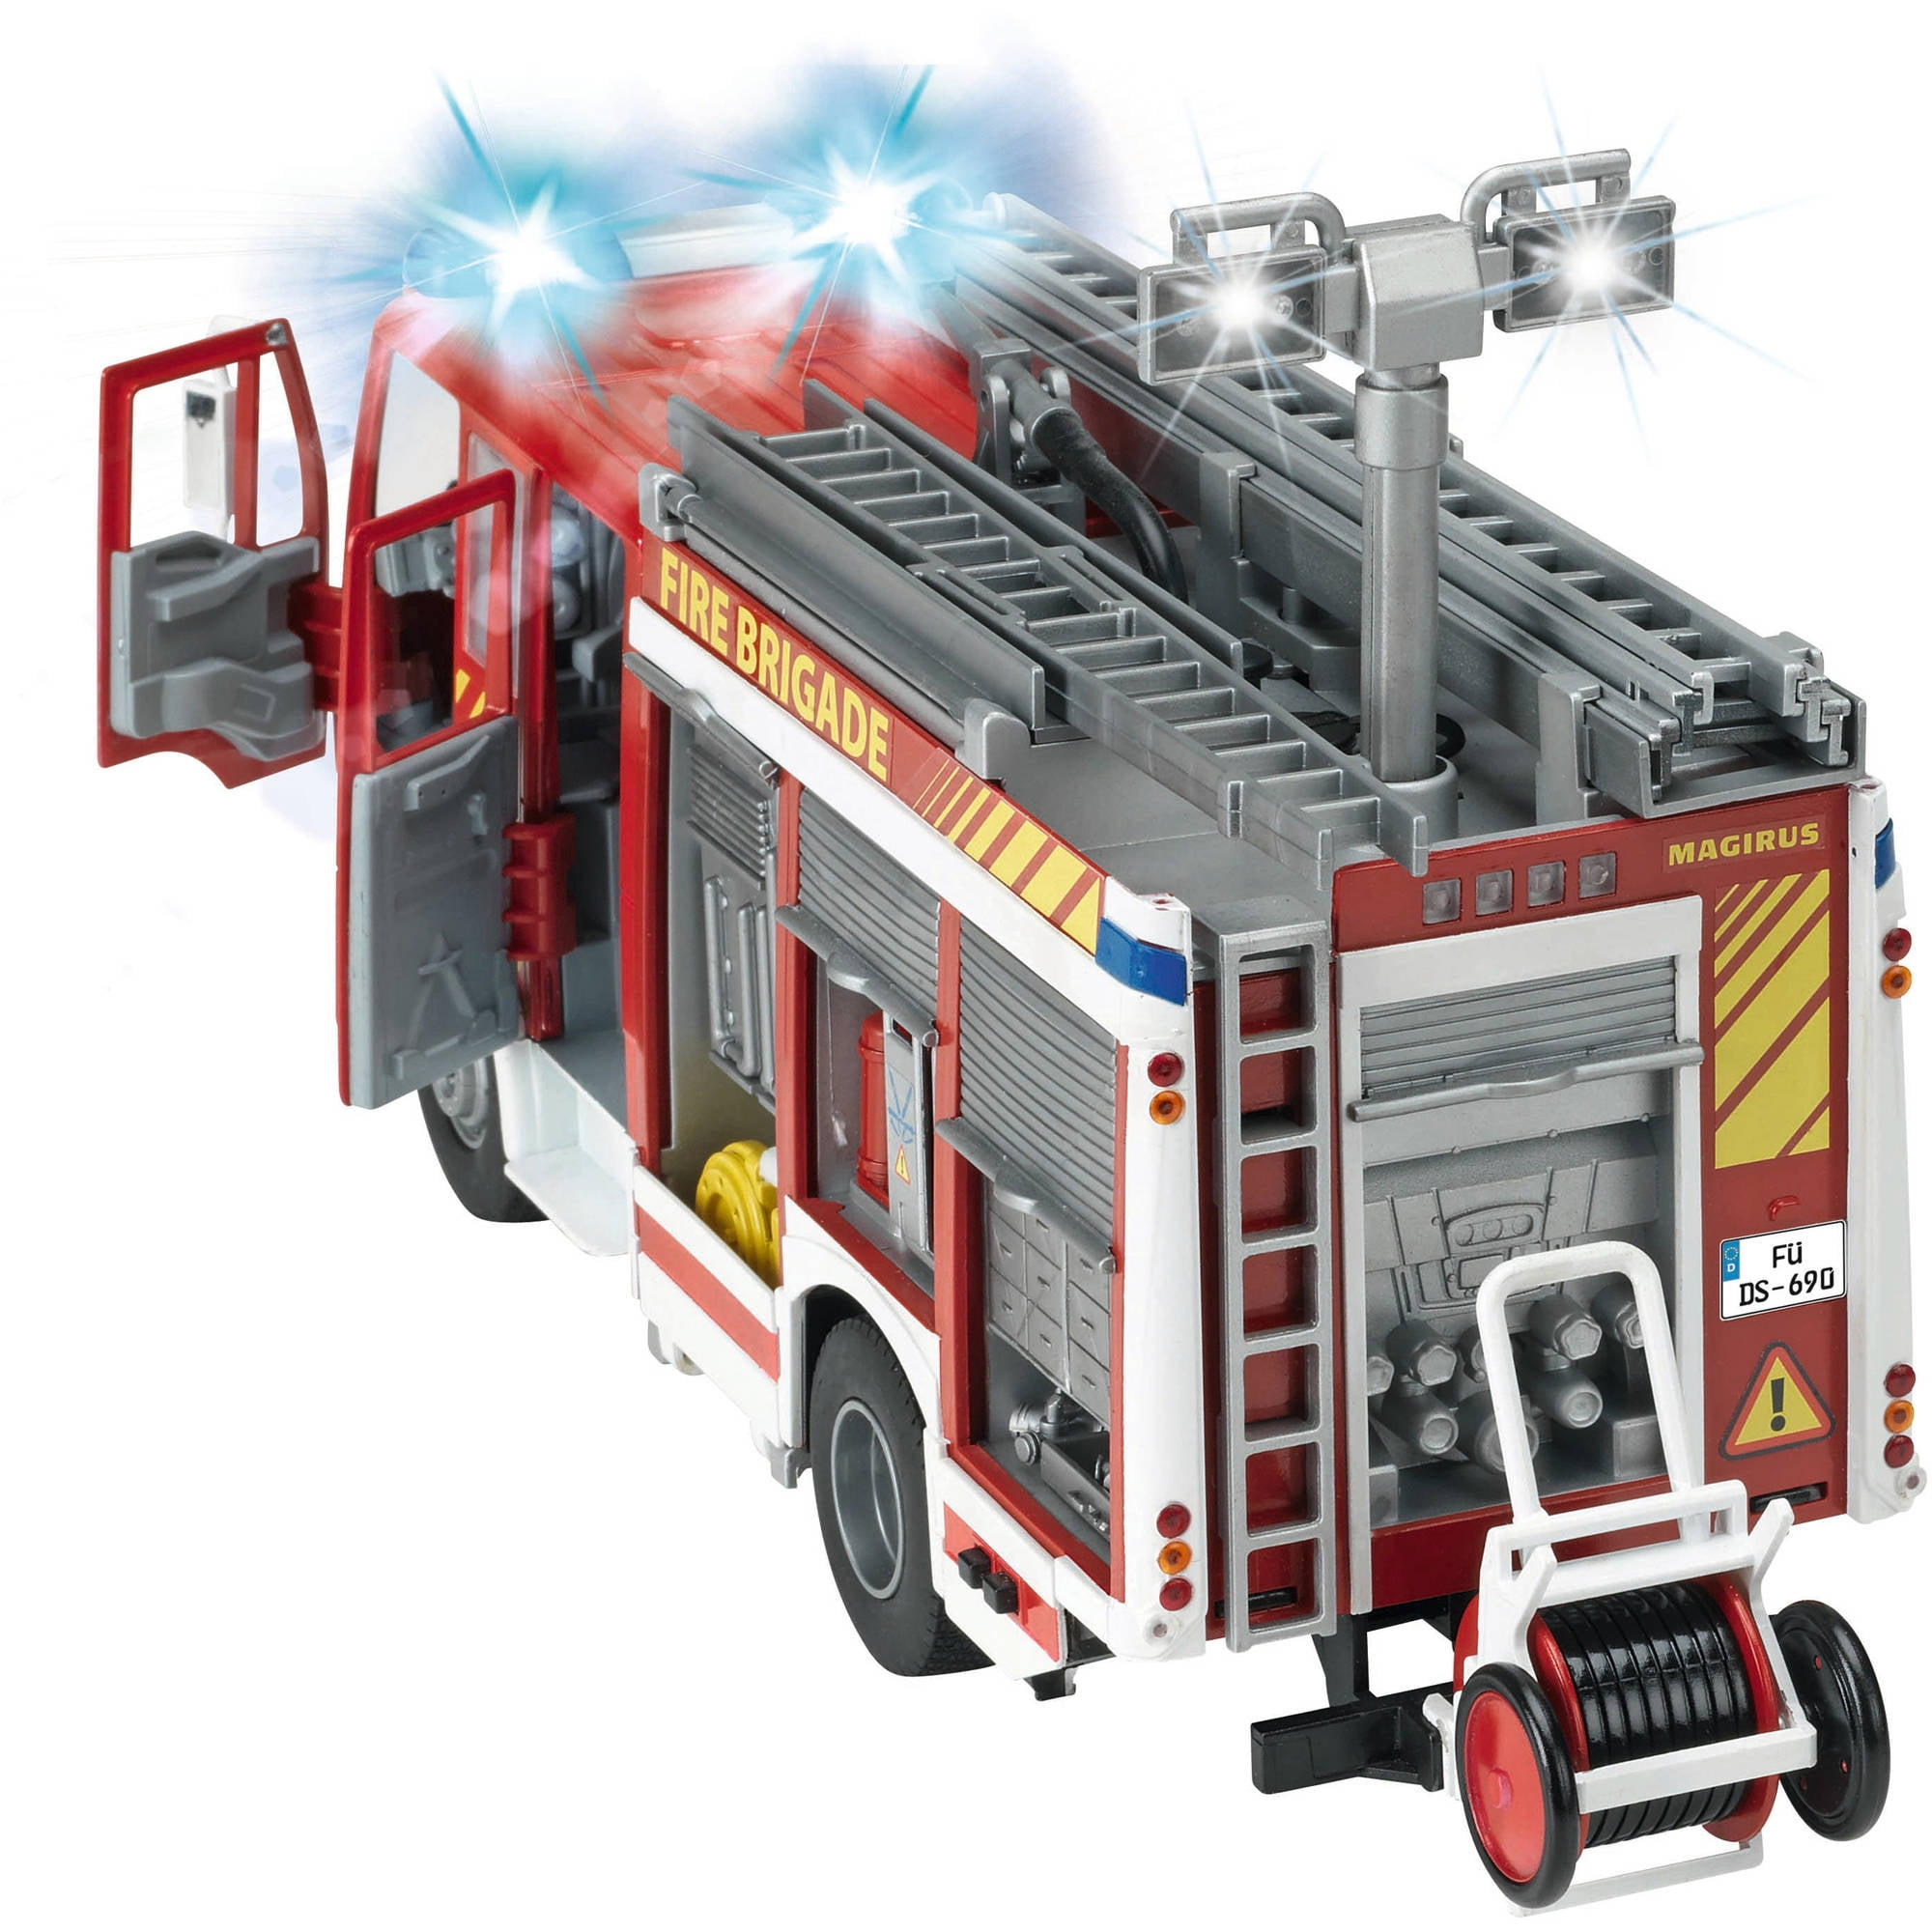 Купить игрушку пожарный. Dickie Toys пожарная машина 3717002 30 см. Пожарный автомобиль Dickie Toys пожарная машина (3717002). Пожарная машина Dickie Toys "Magirus". Машина пожарная с водой Dickie Toys пожарная.